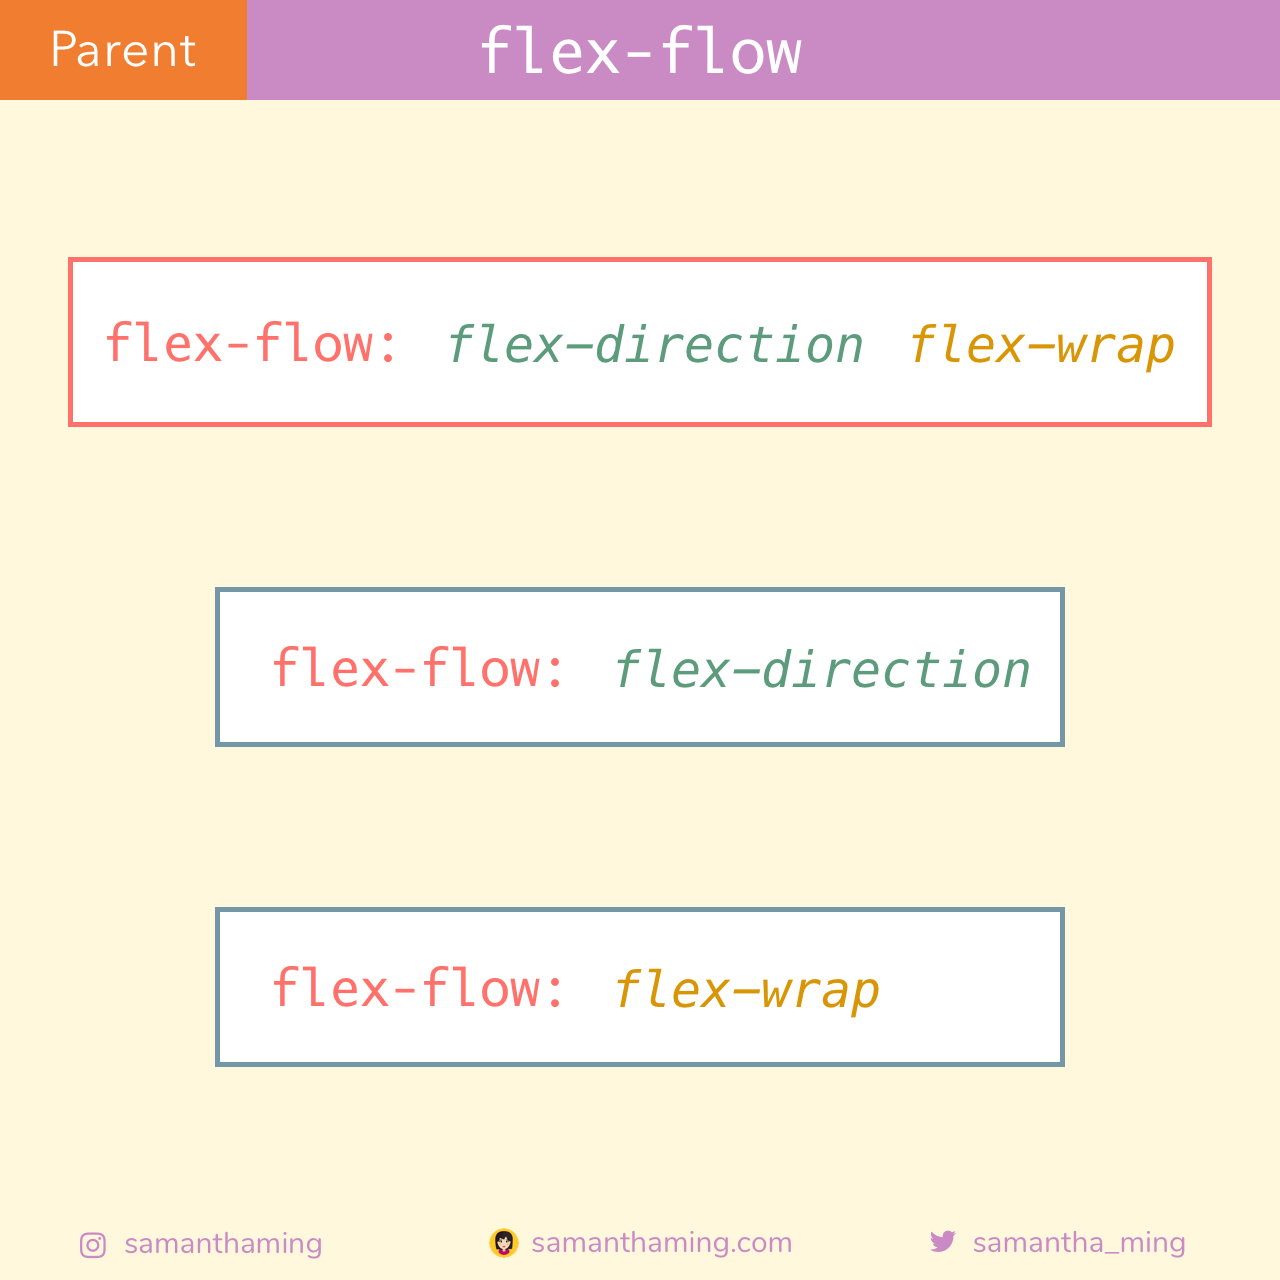 flex-flow